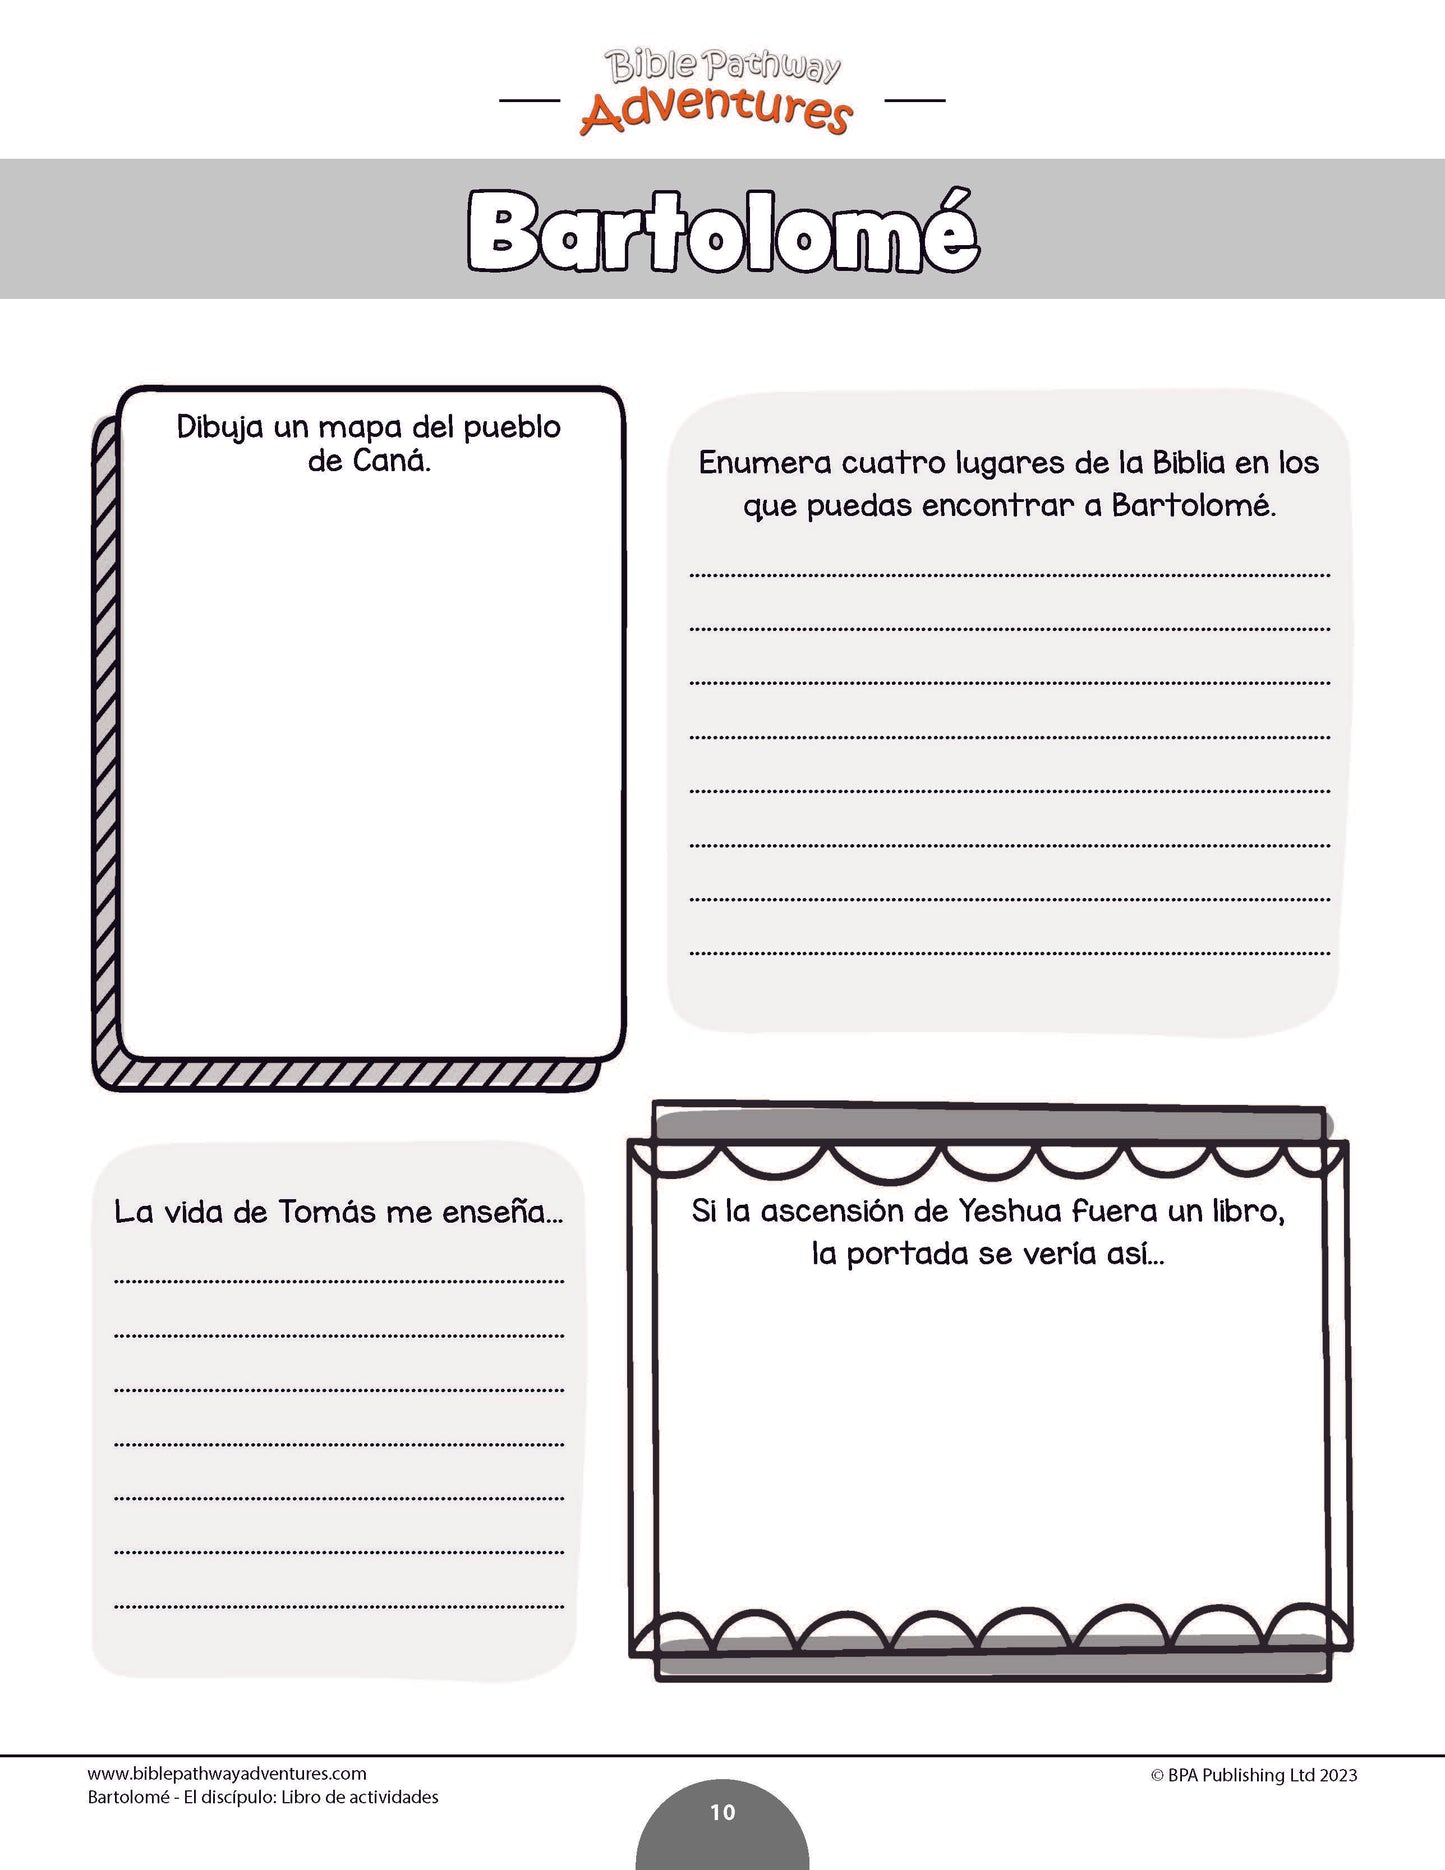 Bartolomé - El discípulo: Libro de actividades